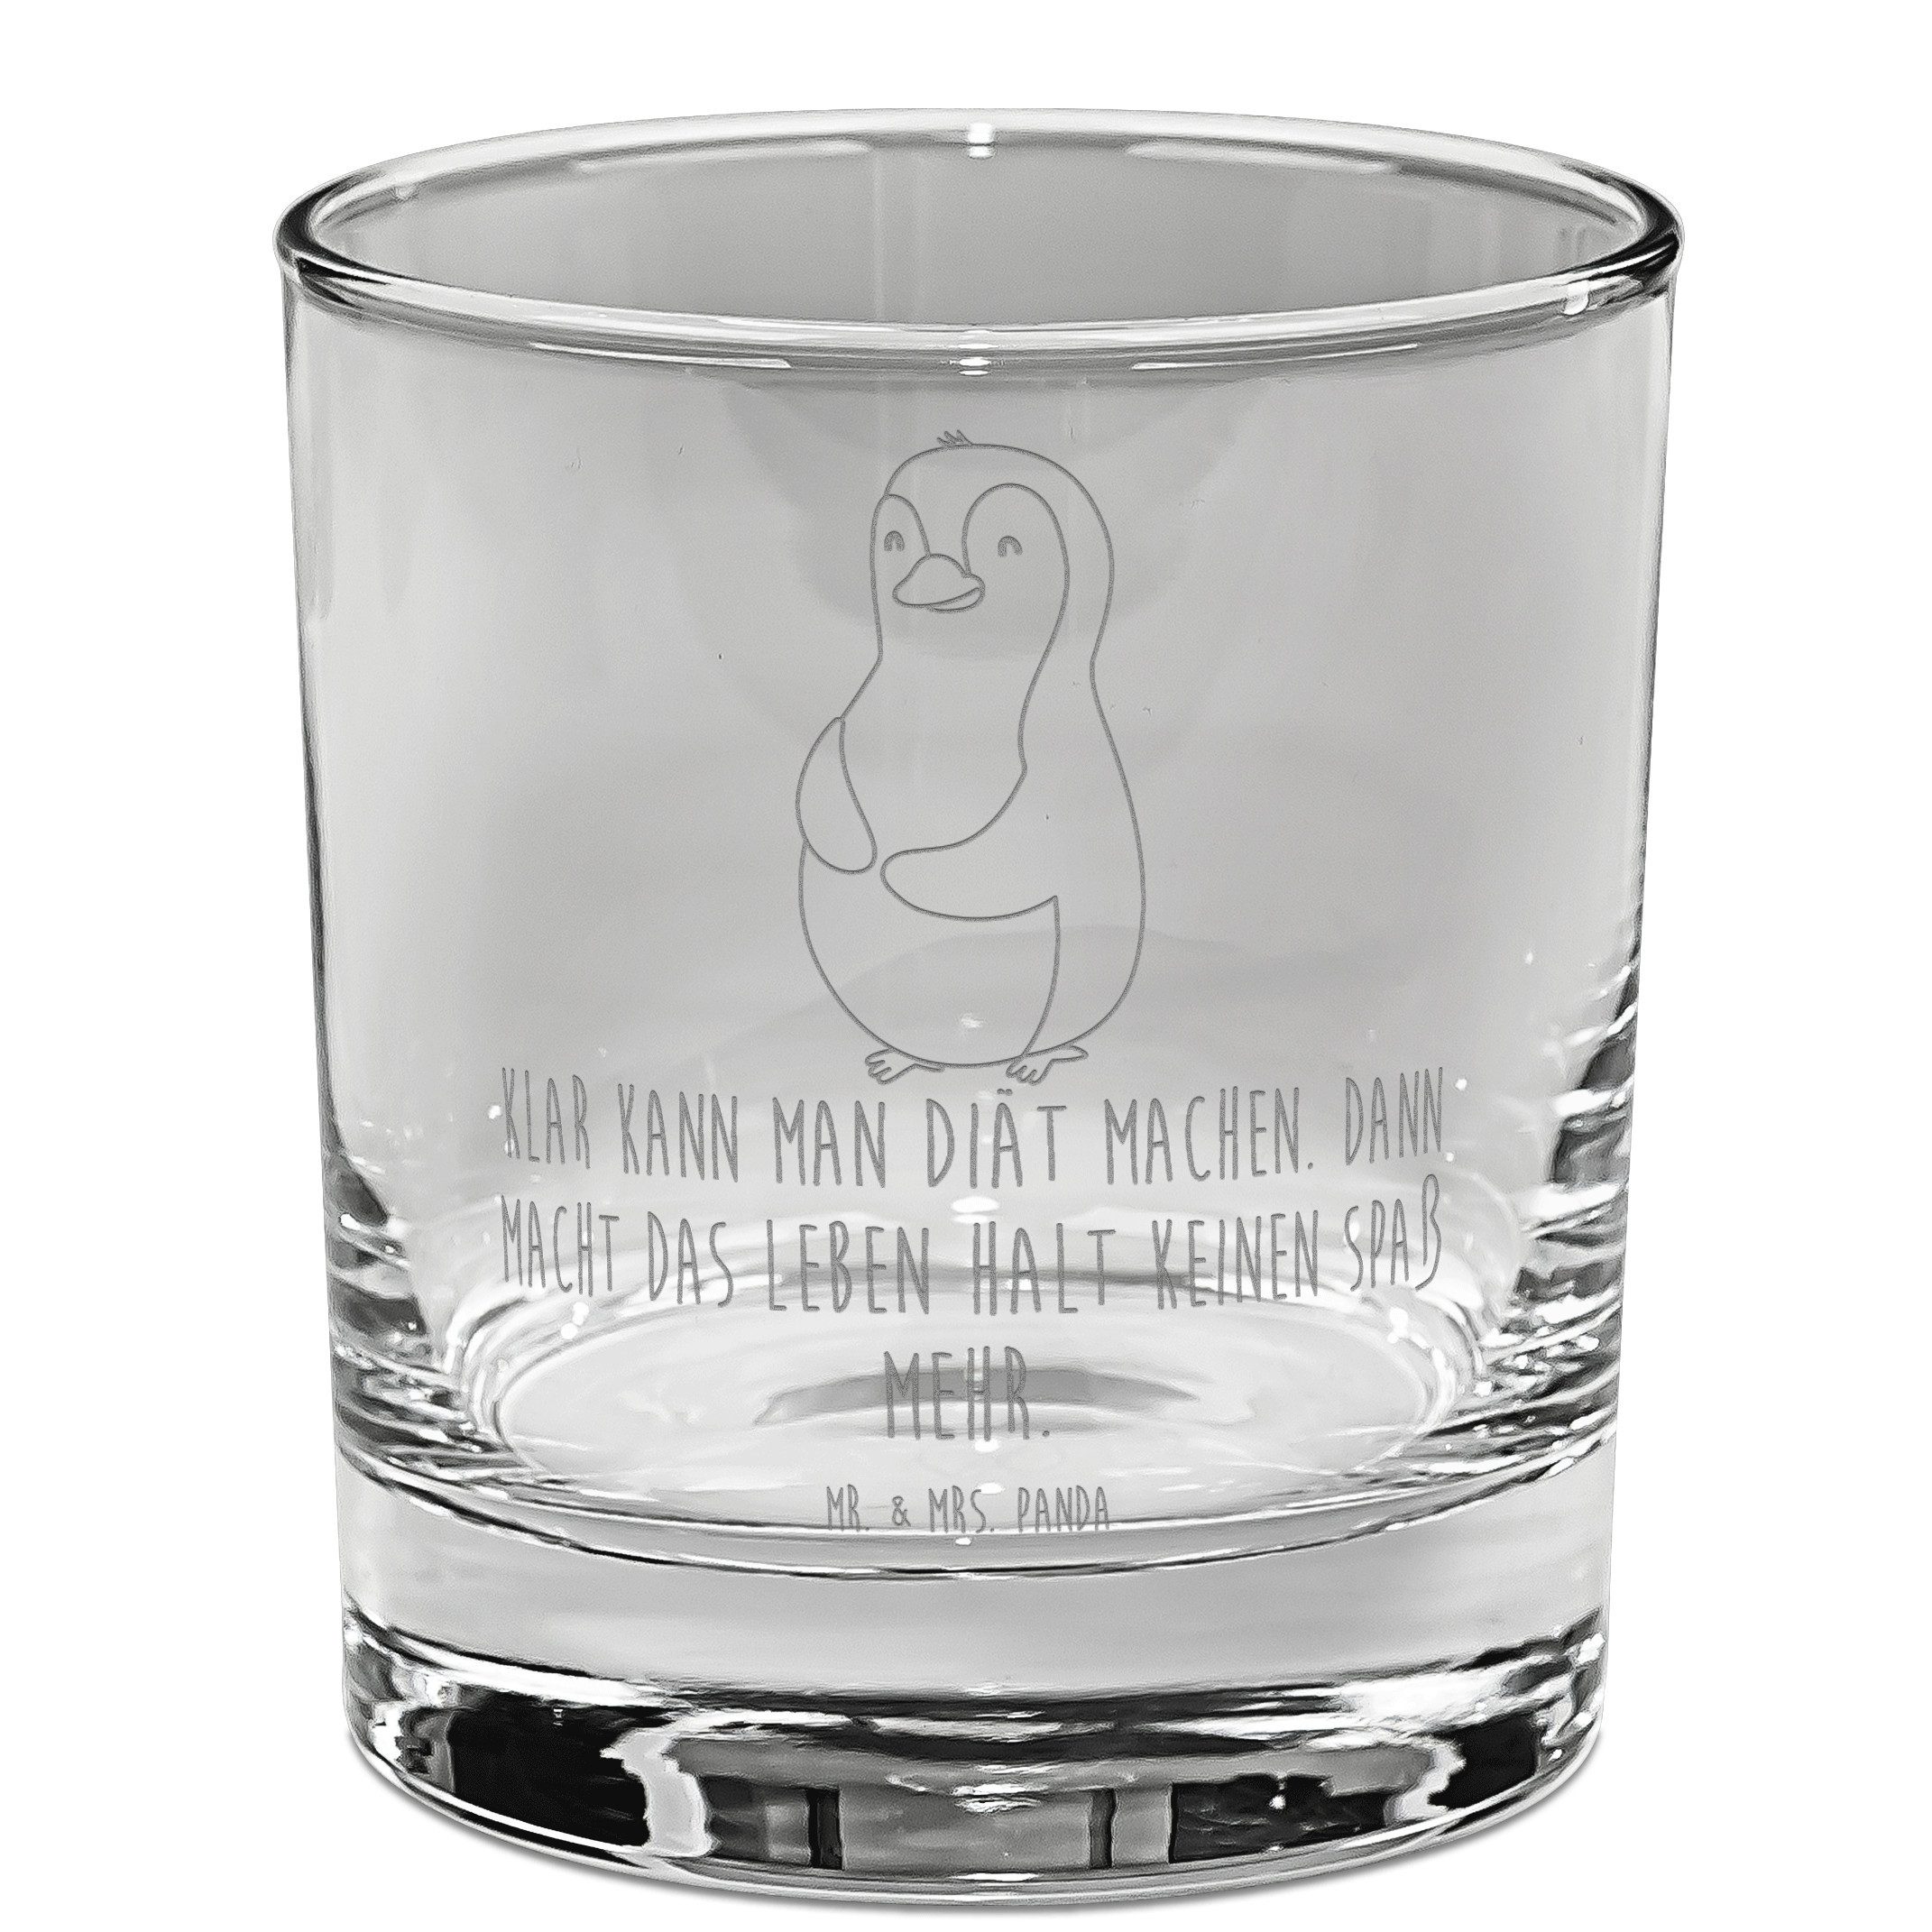 Mr. & Mrs. Panda Whiskyglas Pinguin Diät - Transparent - Geschenk, Whiskey Glas, Selbstliebe, dic, Premium Glas, Mit Liebe graviert